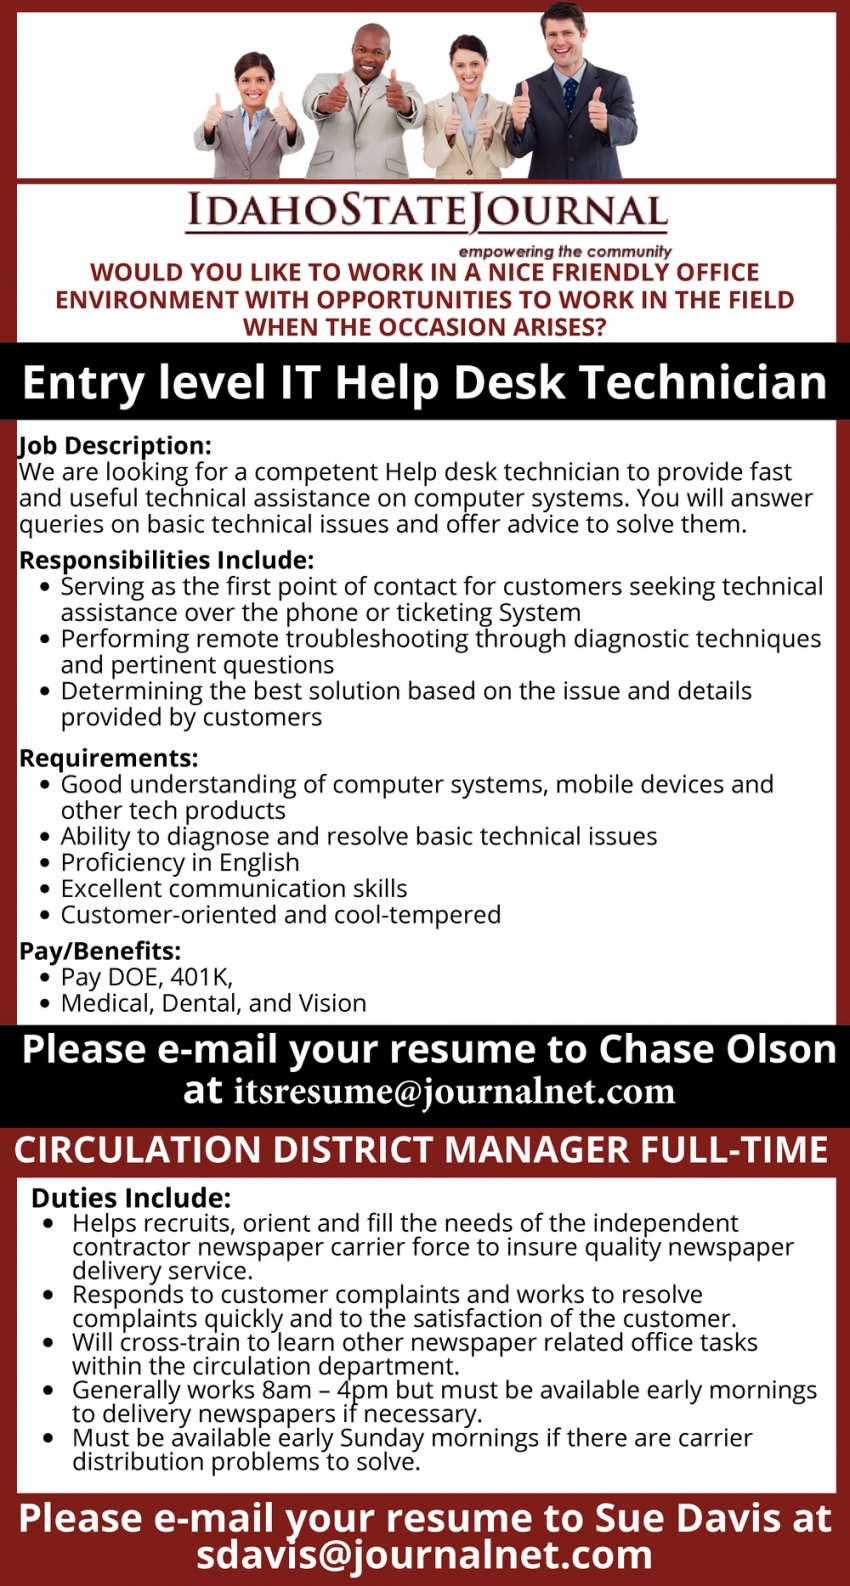 Entry Level IT Help Desk Technician